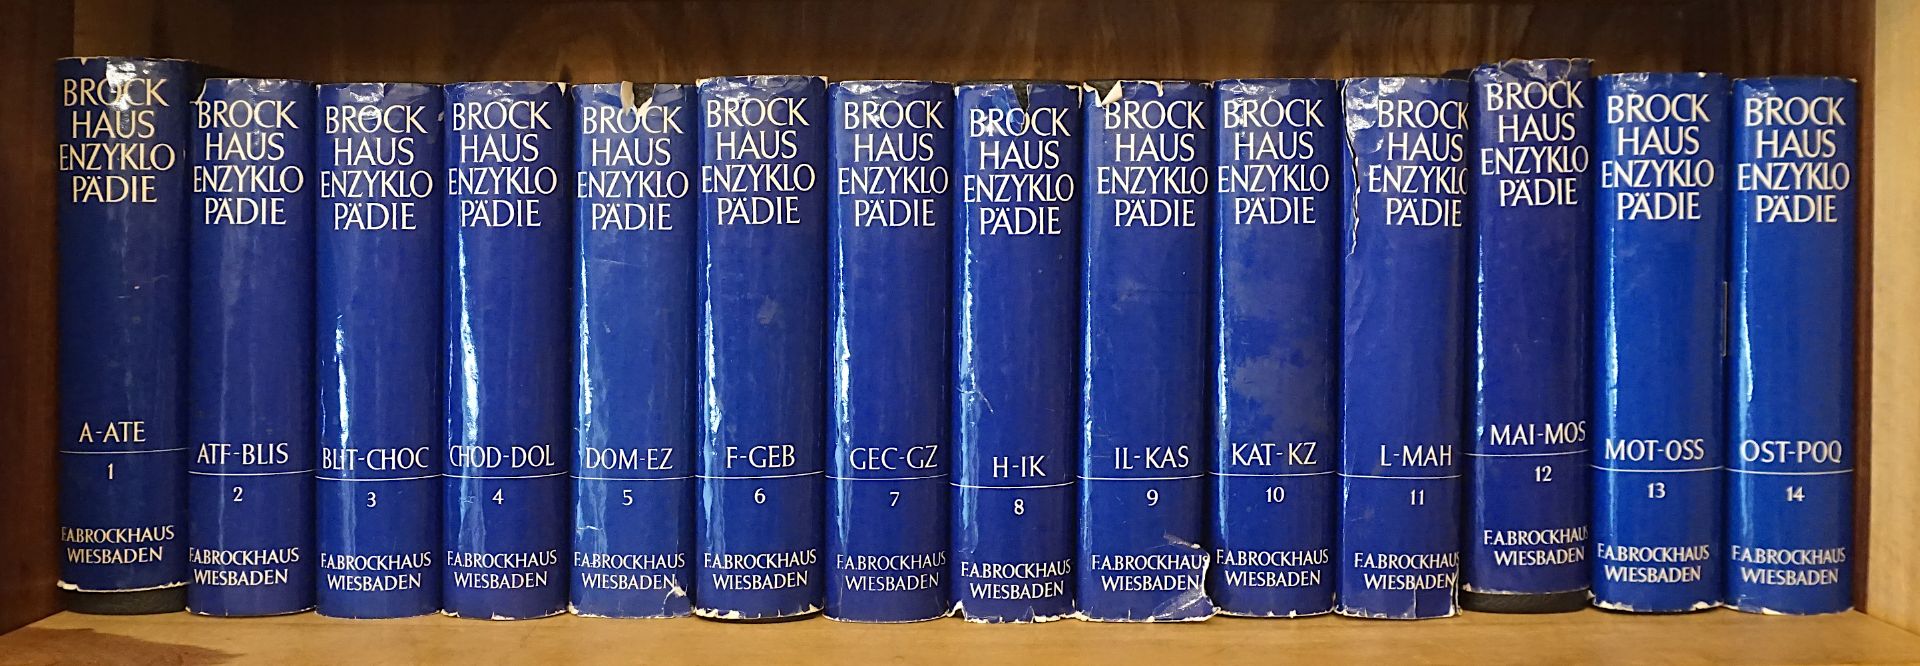 1 Enzyklopädie "BROCKHAUS" in 20 Bänden Wiesbaden 1968 - Bild 2 aus 4